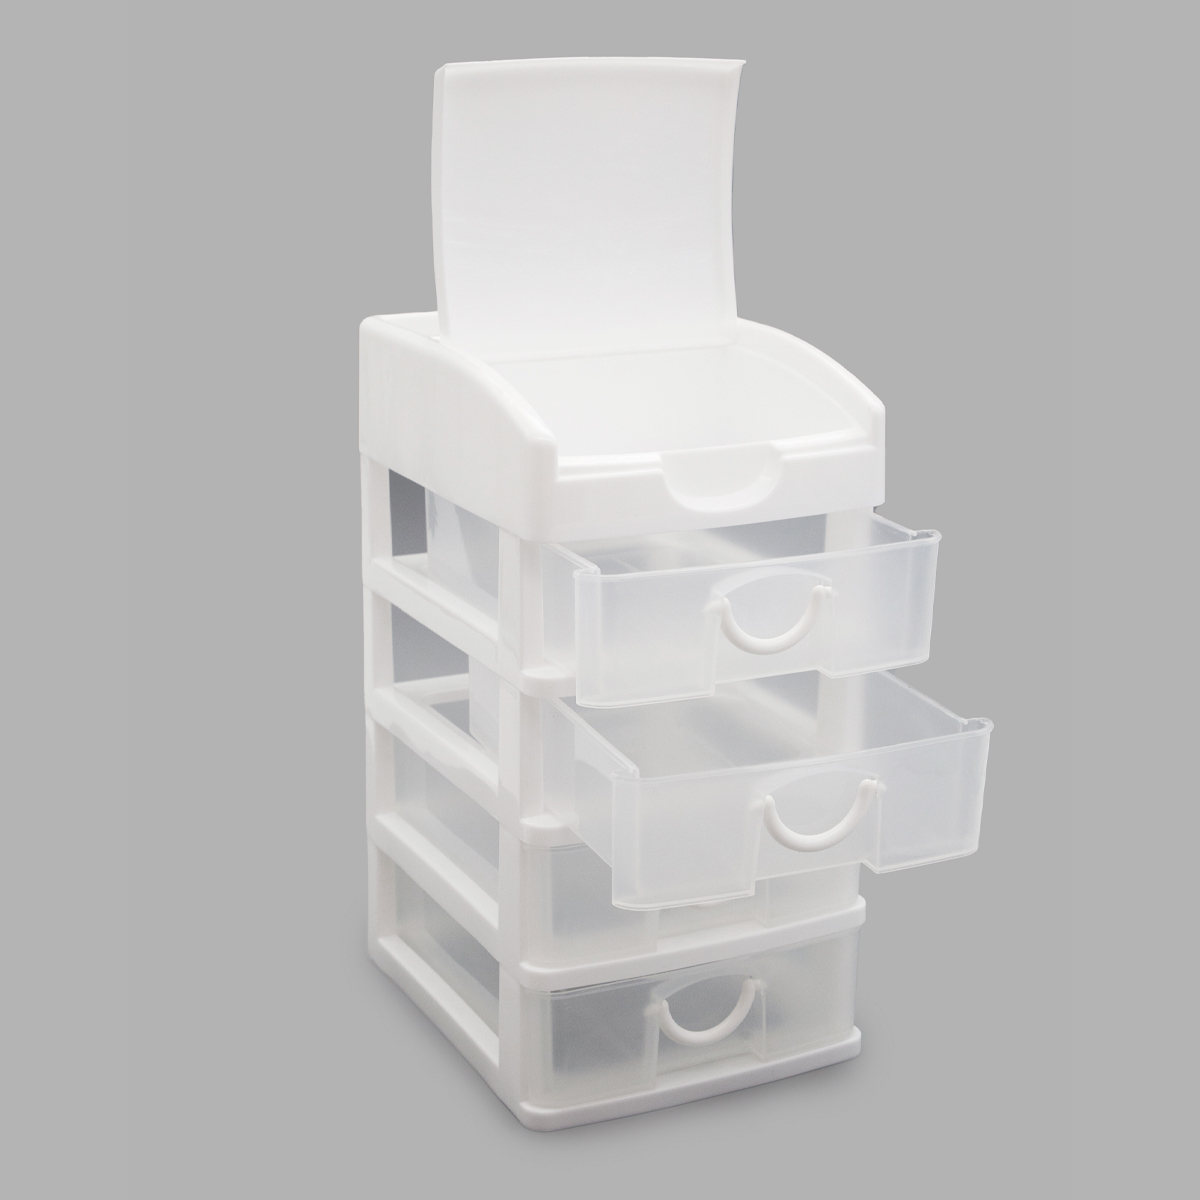 Контейнер Айрис пластиковый для мелочей в виде комода на 4 ящика 15.8 х 12.8 х 24.5 см - фото 3